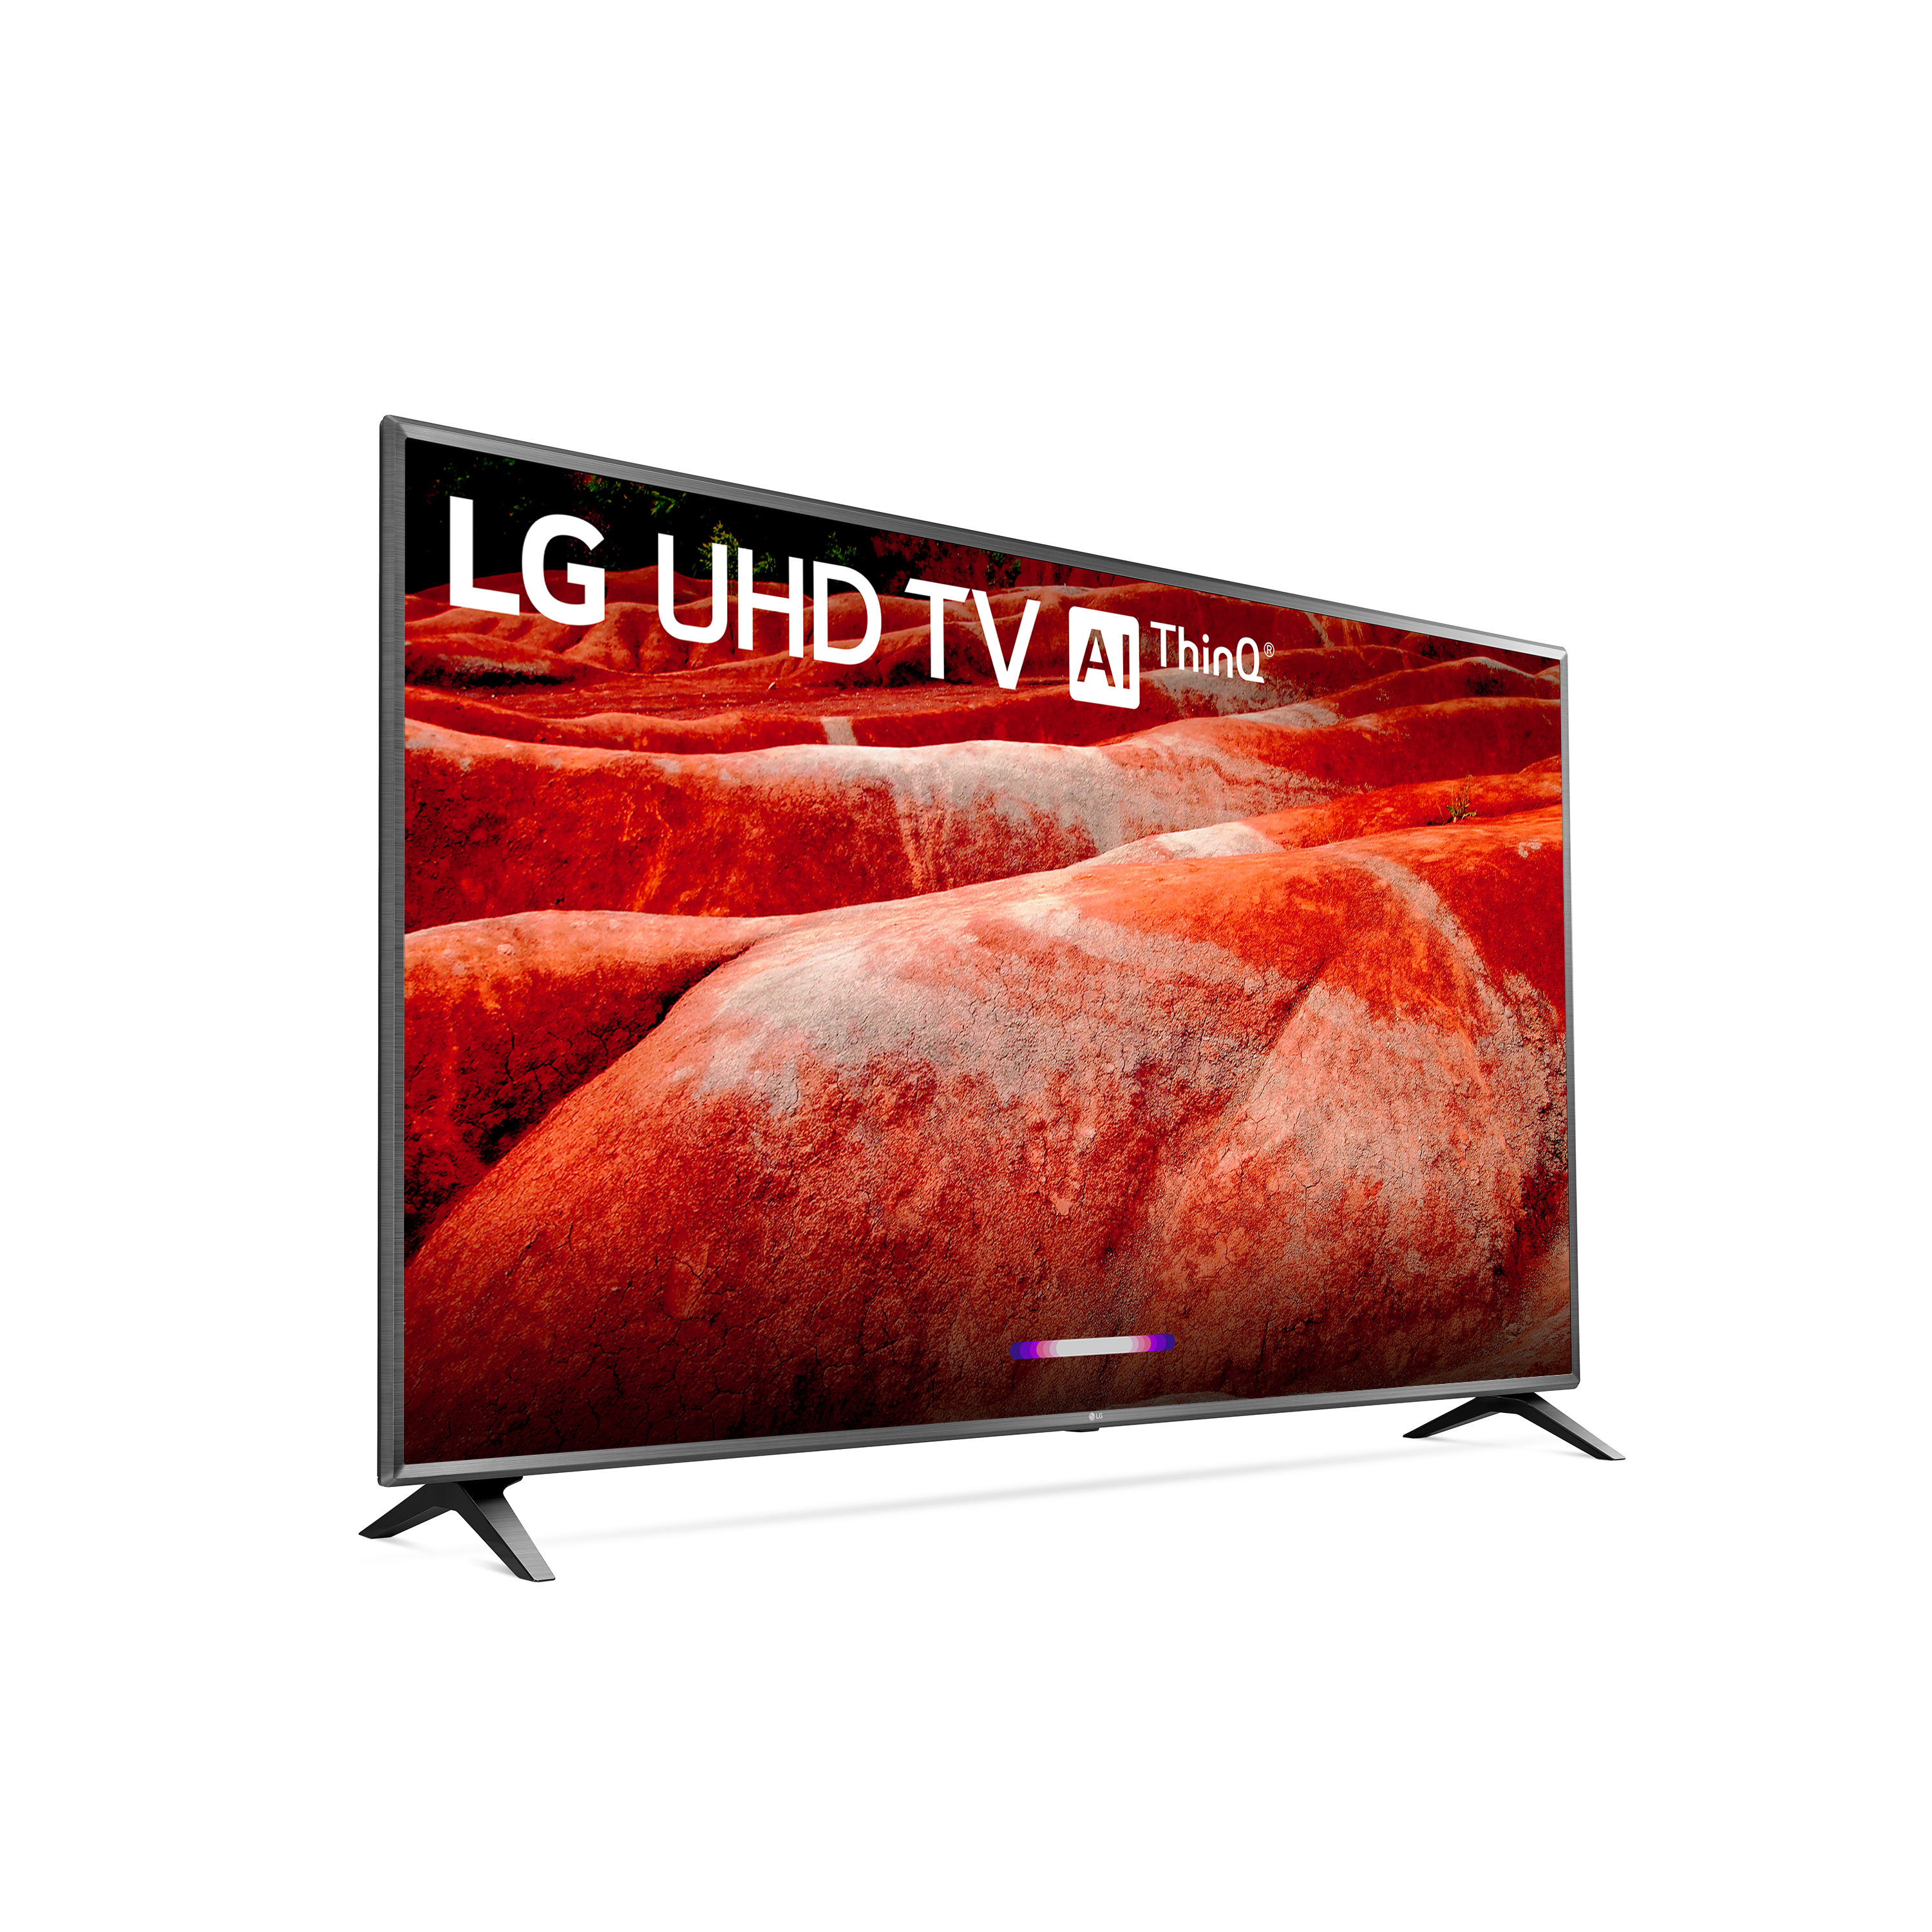 LG 86" Class 4K (2160P) Ultra HD Smart LED HDR TV 86UM8070PUA 2019 Model - image 5 of 14